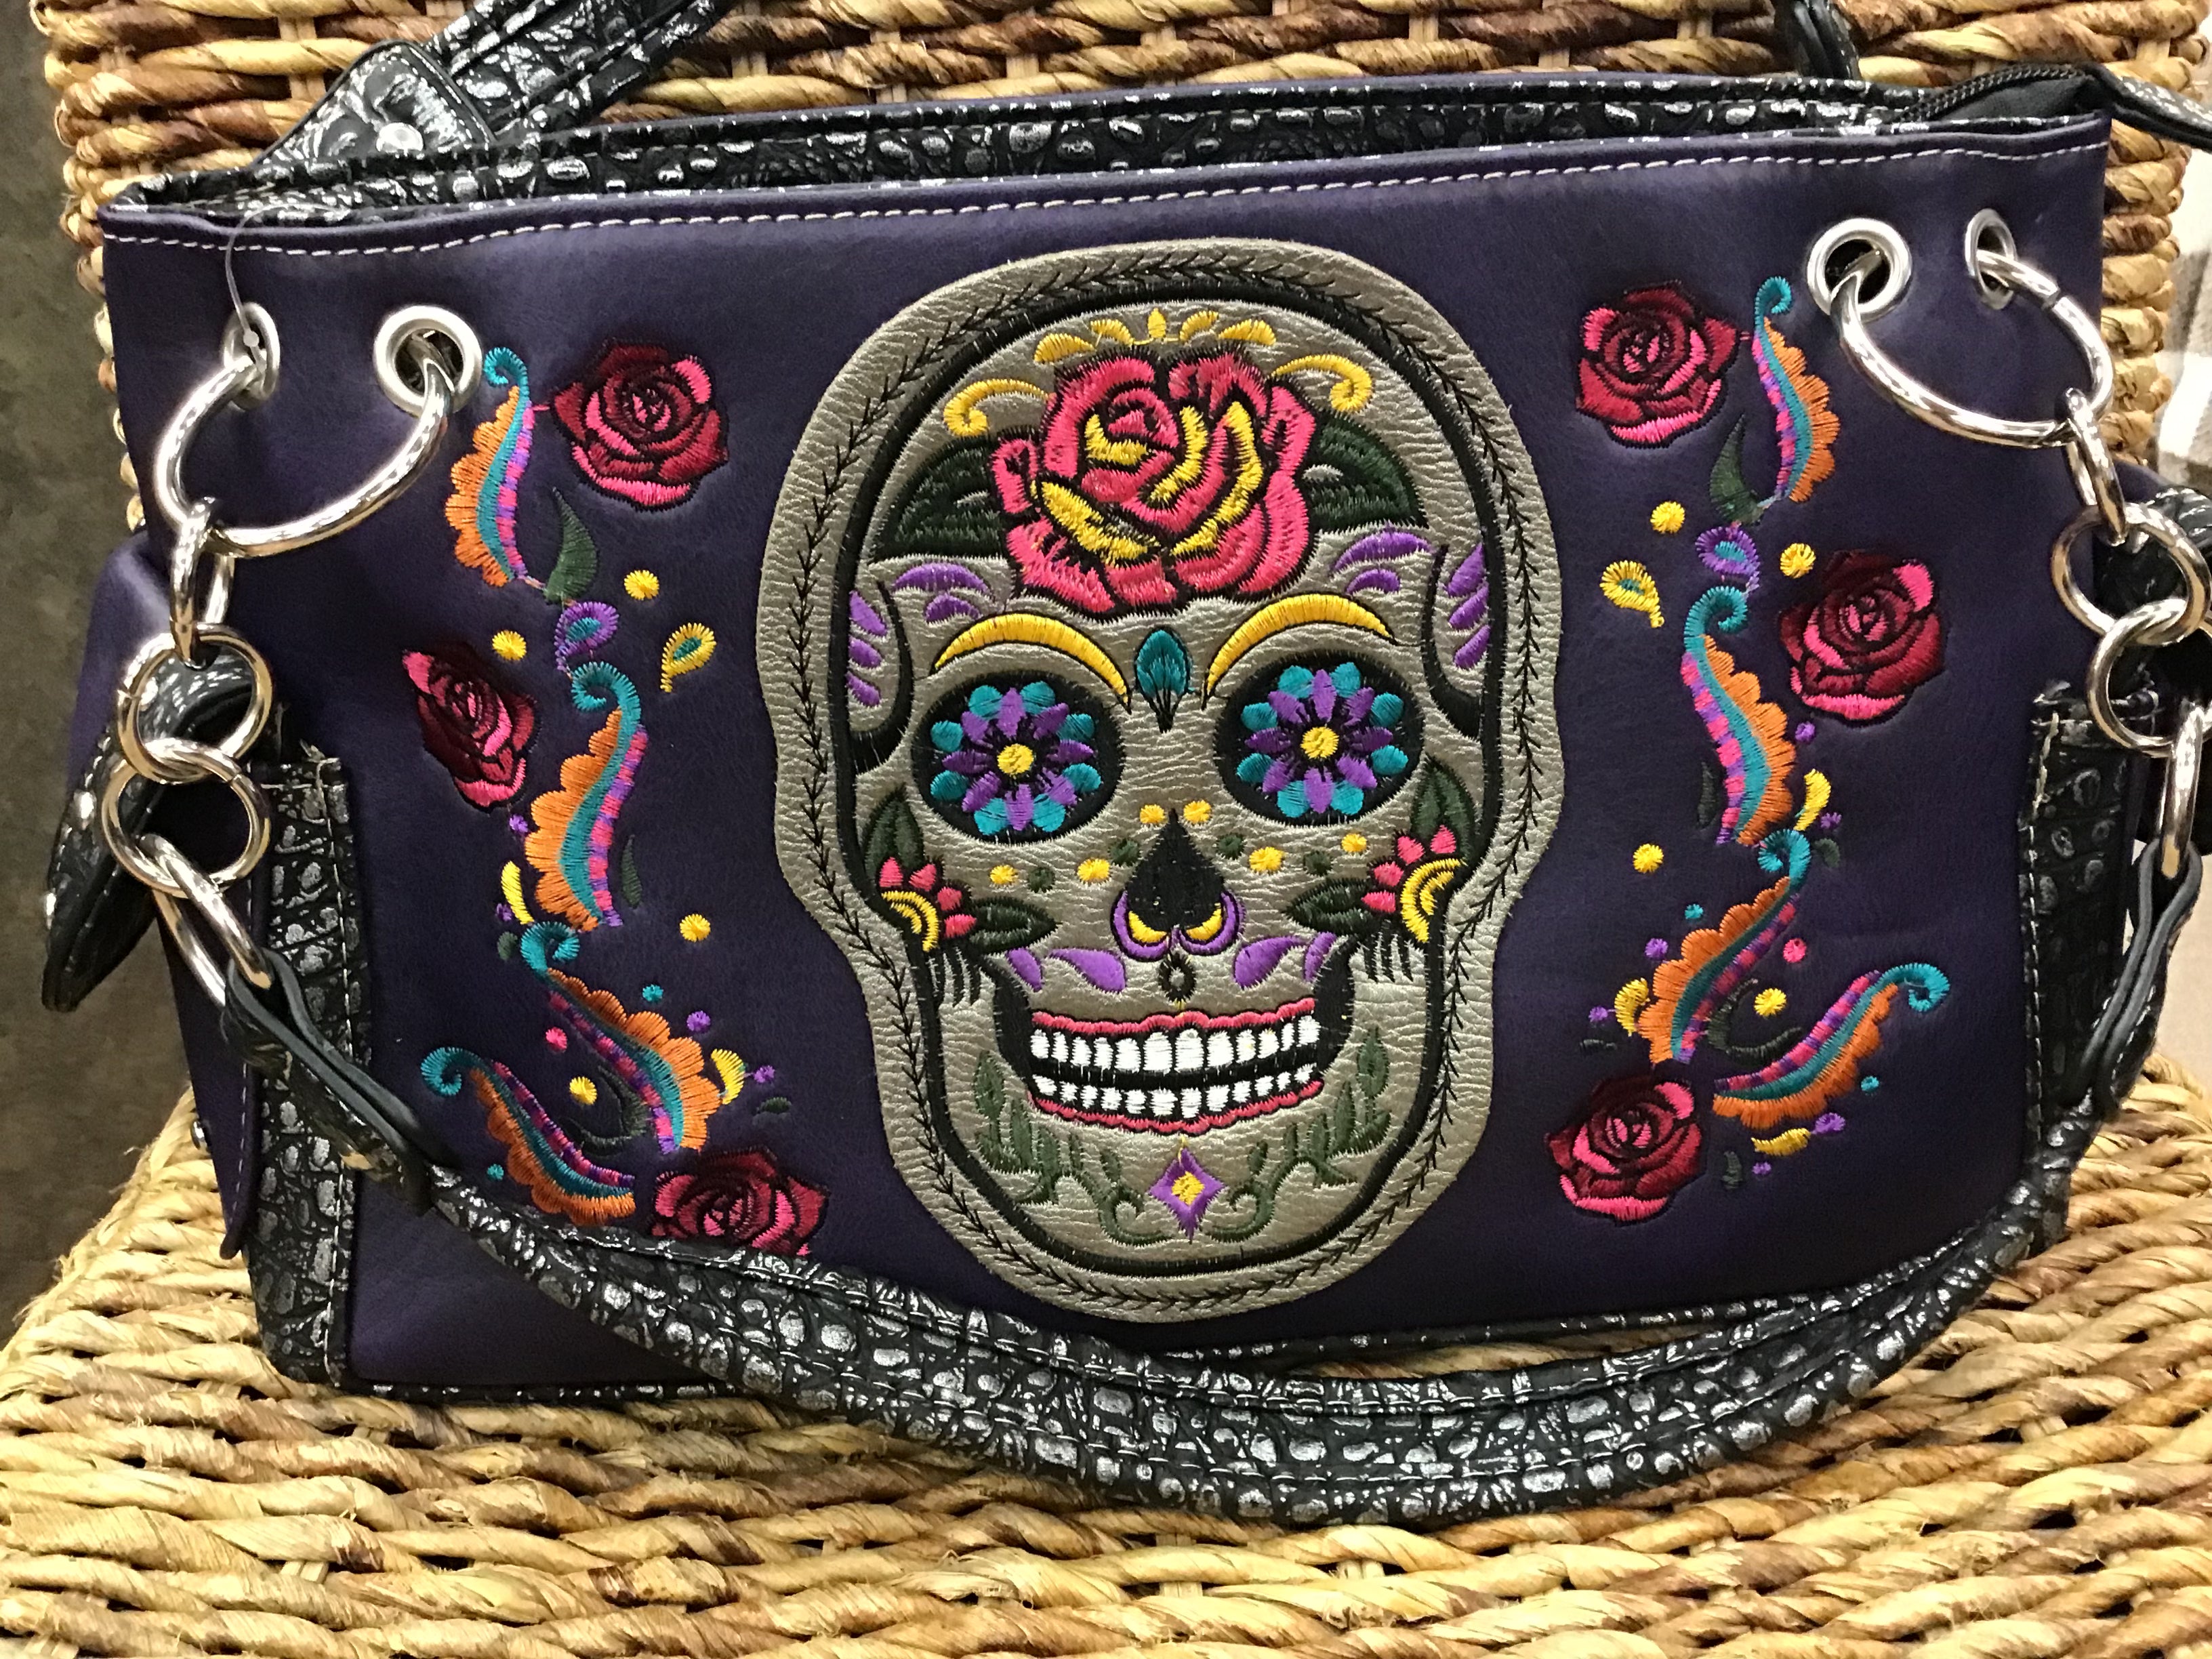 Embroidered Sugar Skull & Roses Handbag